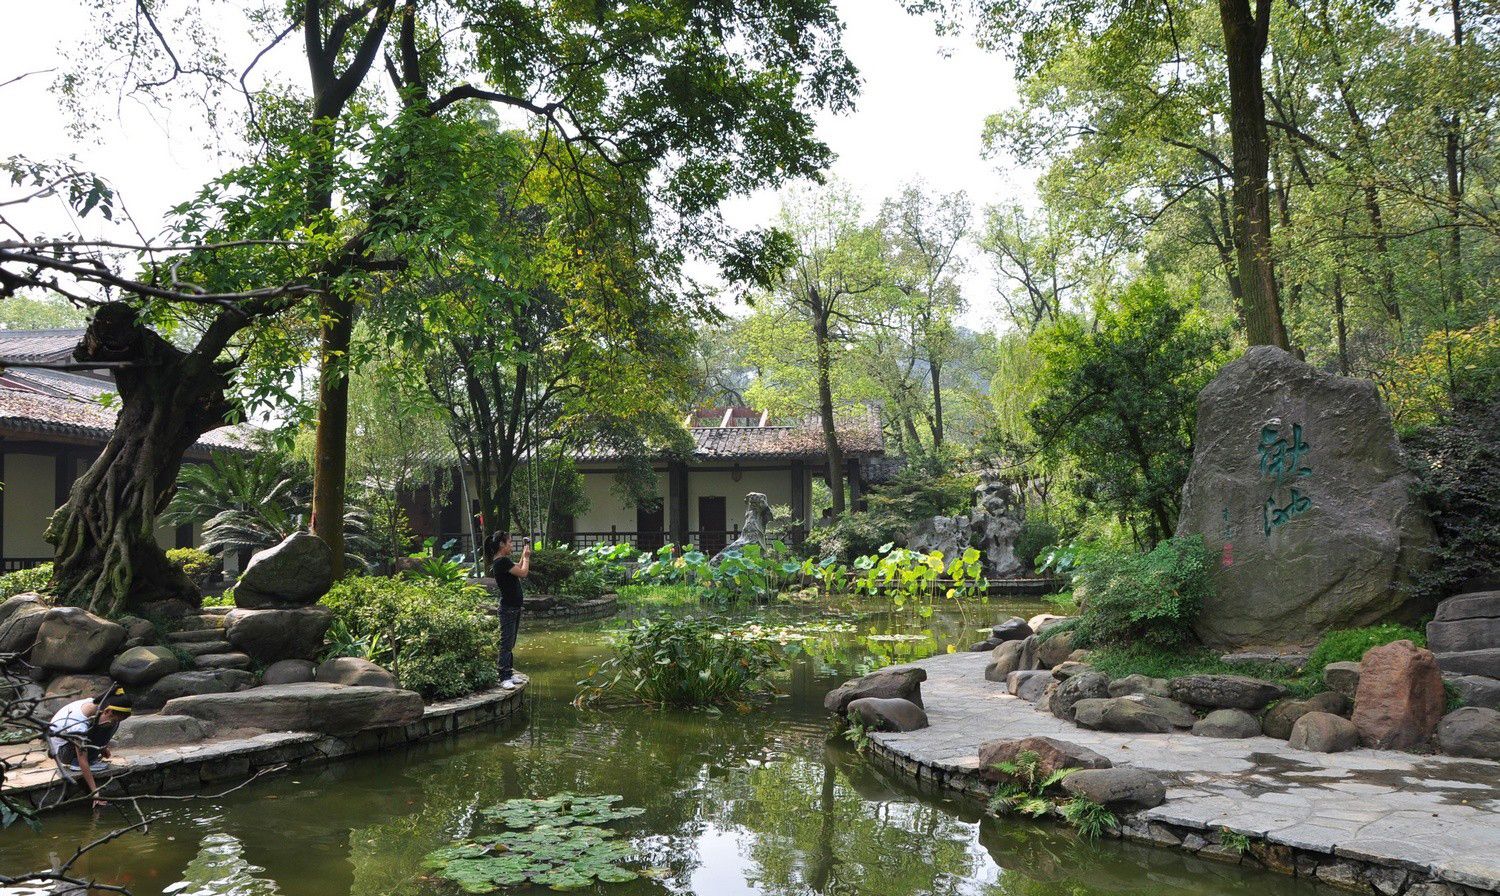 【携程攻略】武汉武汉植物园景点,武汉植物园，这个季节去是最美丽的，各种鲜花竞相开放，争奇斗艳。一…